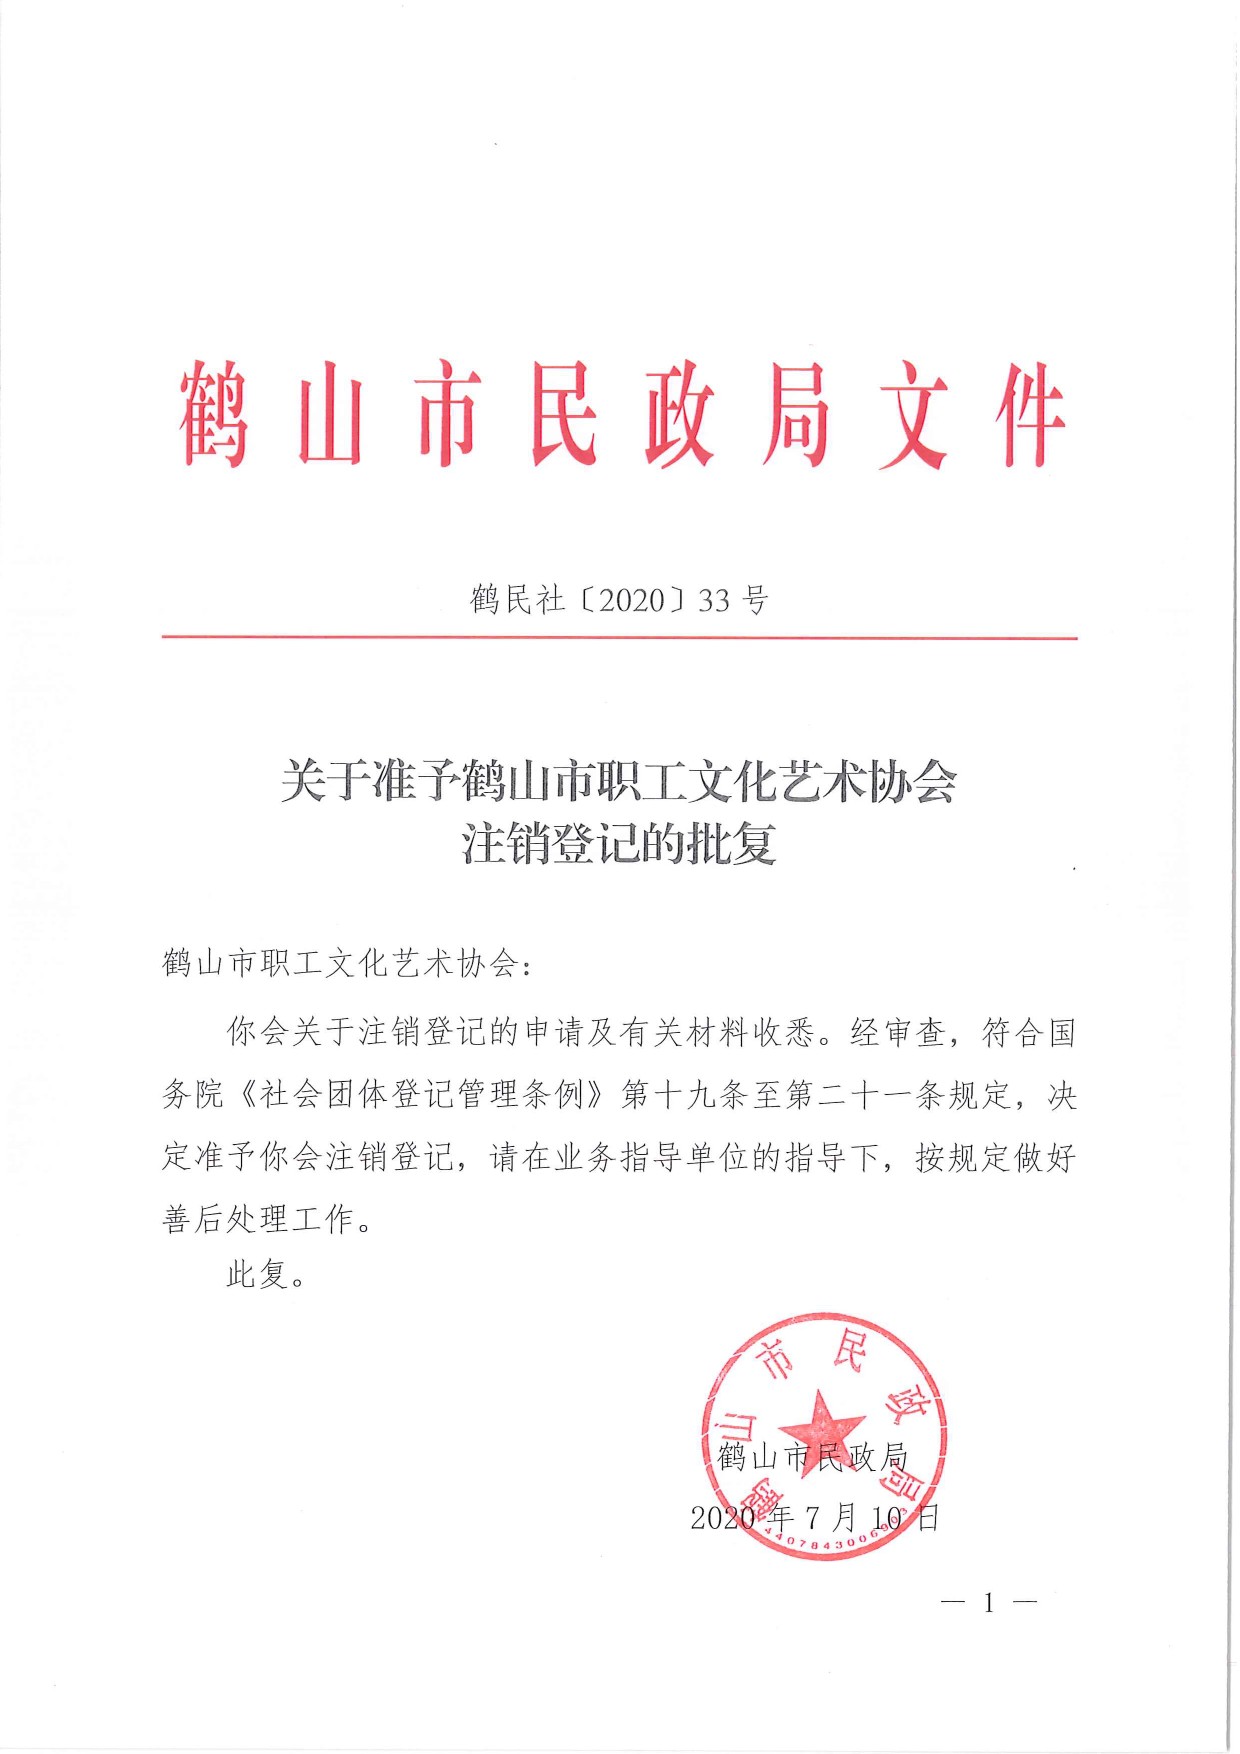 鹤民社〔2020〕33号关于准予鹤山市职工文化艺术协会注销登记的批复-3.jpg